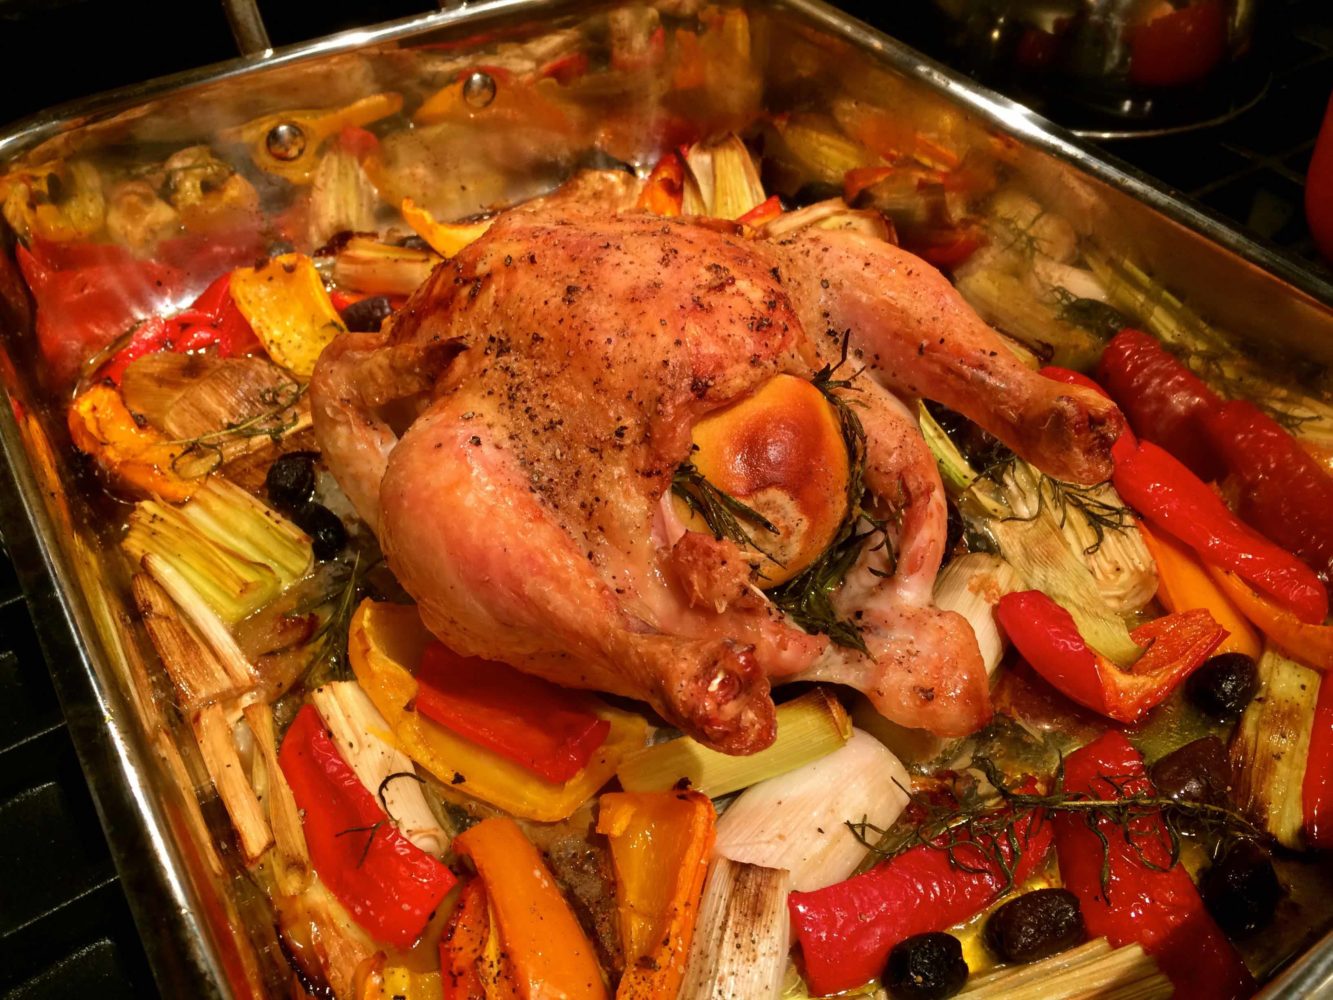 Italian roast chicken